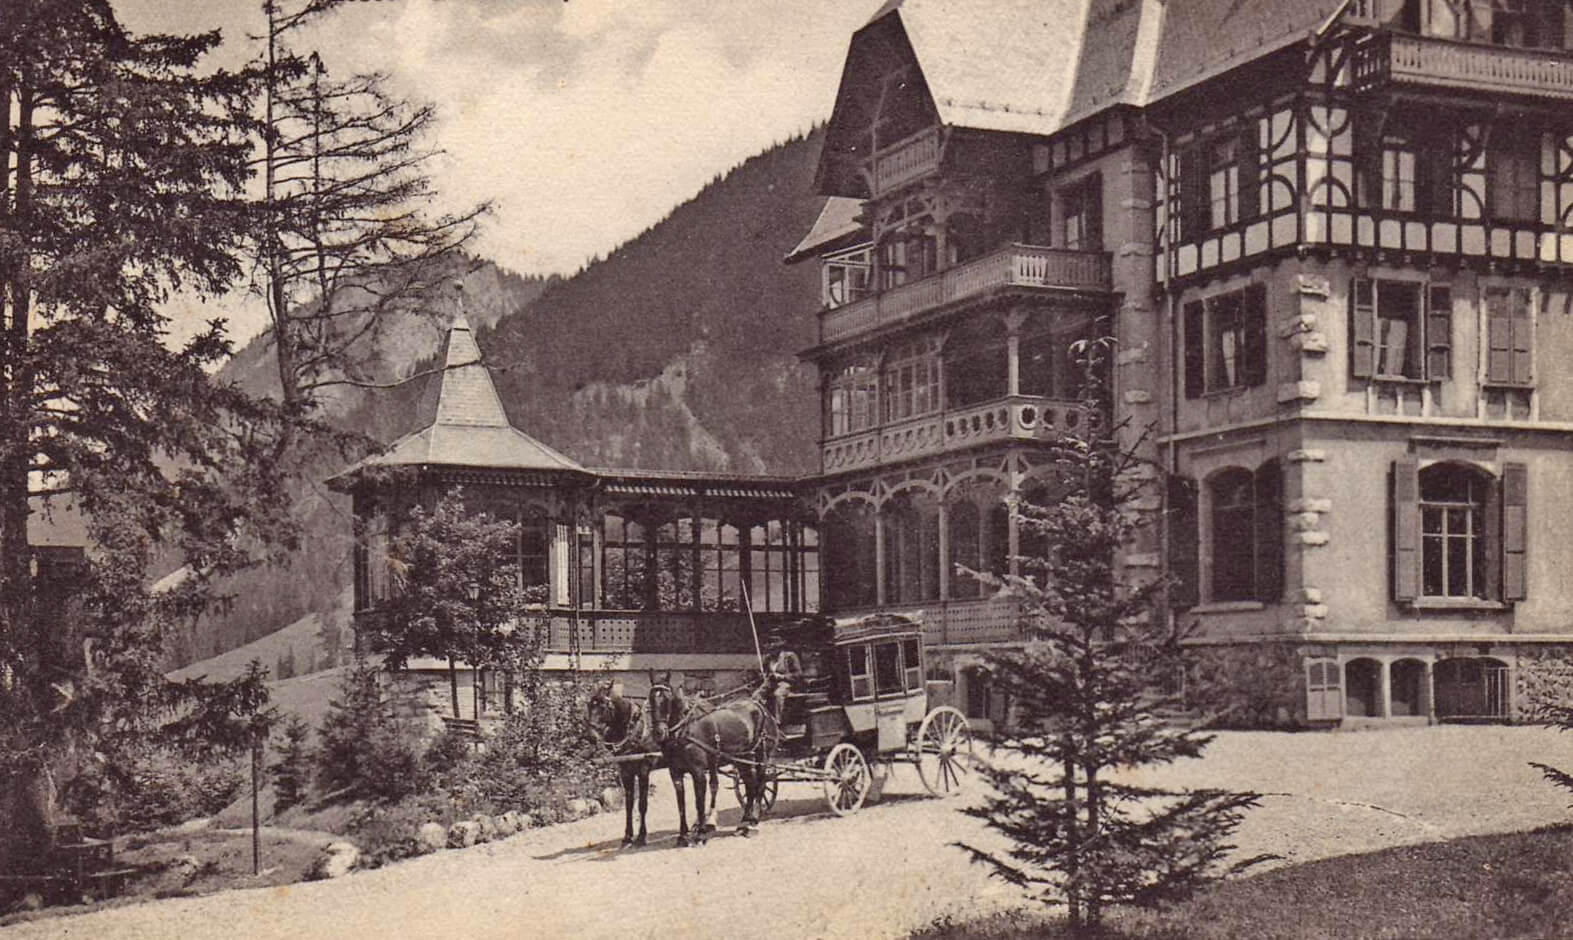 Grimmialp hotel in Albert Schweitzer's day